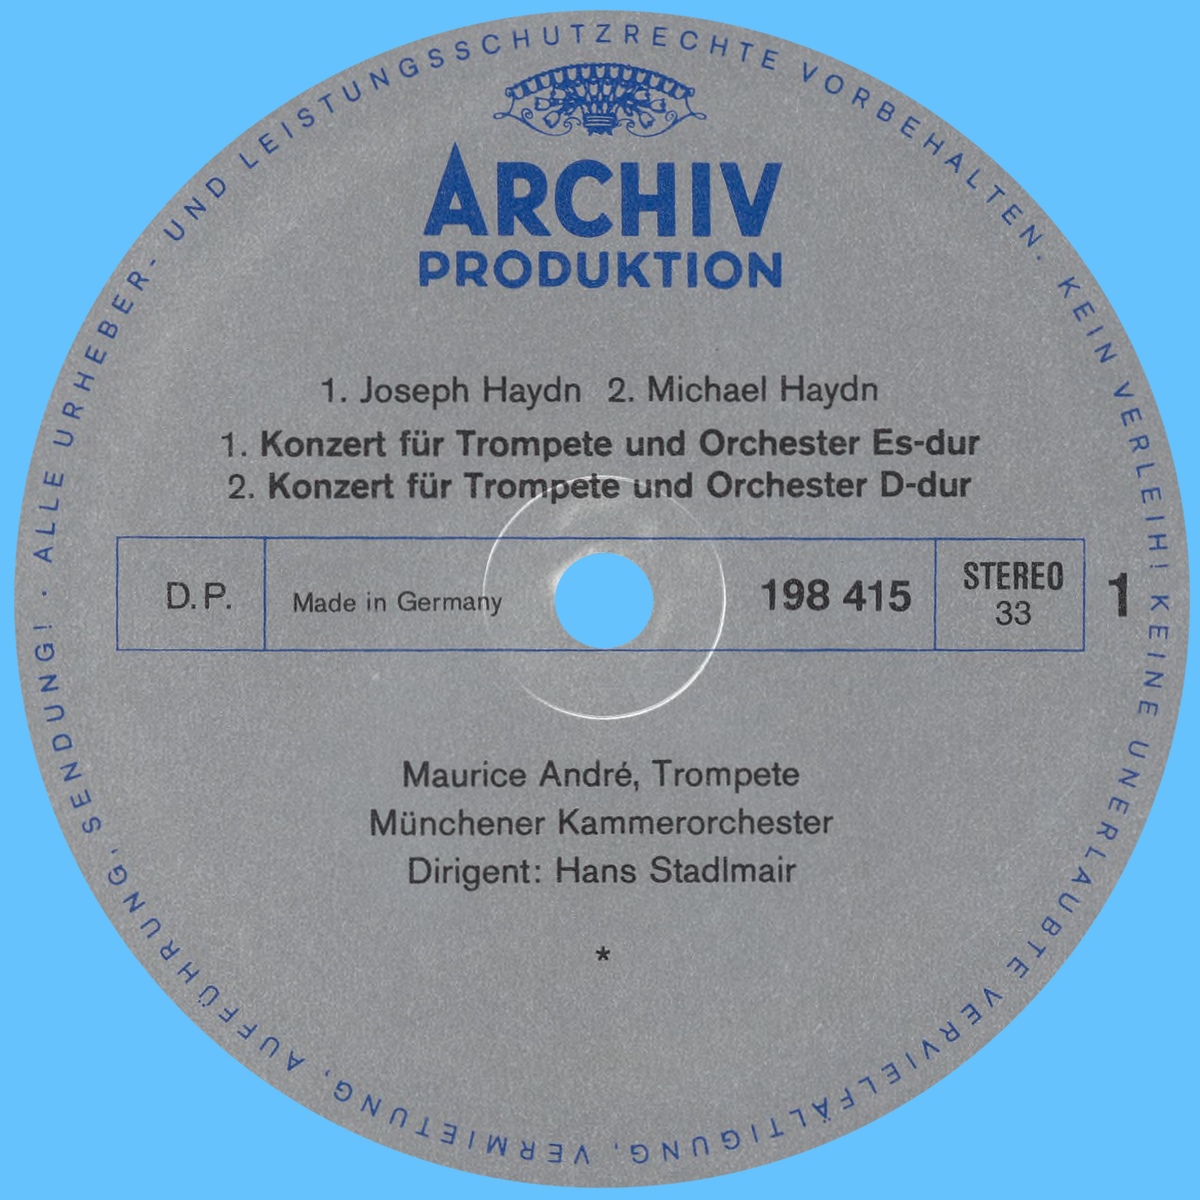 Étiquette recto du disque Archiv Produktion 198 415